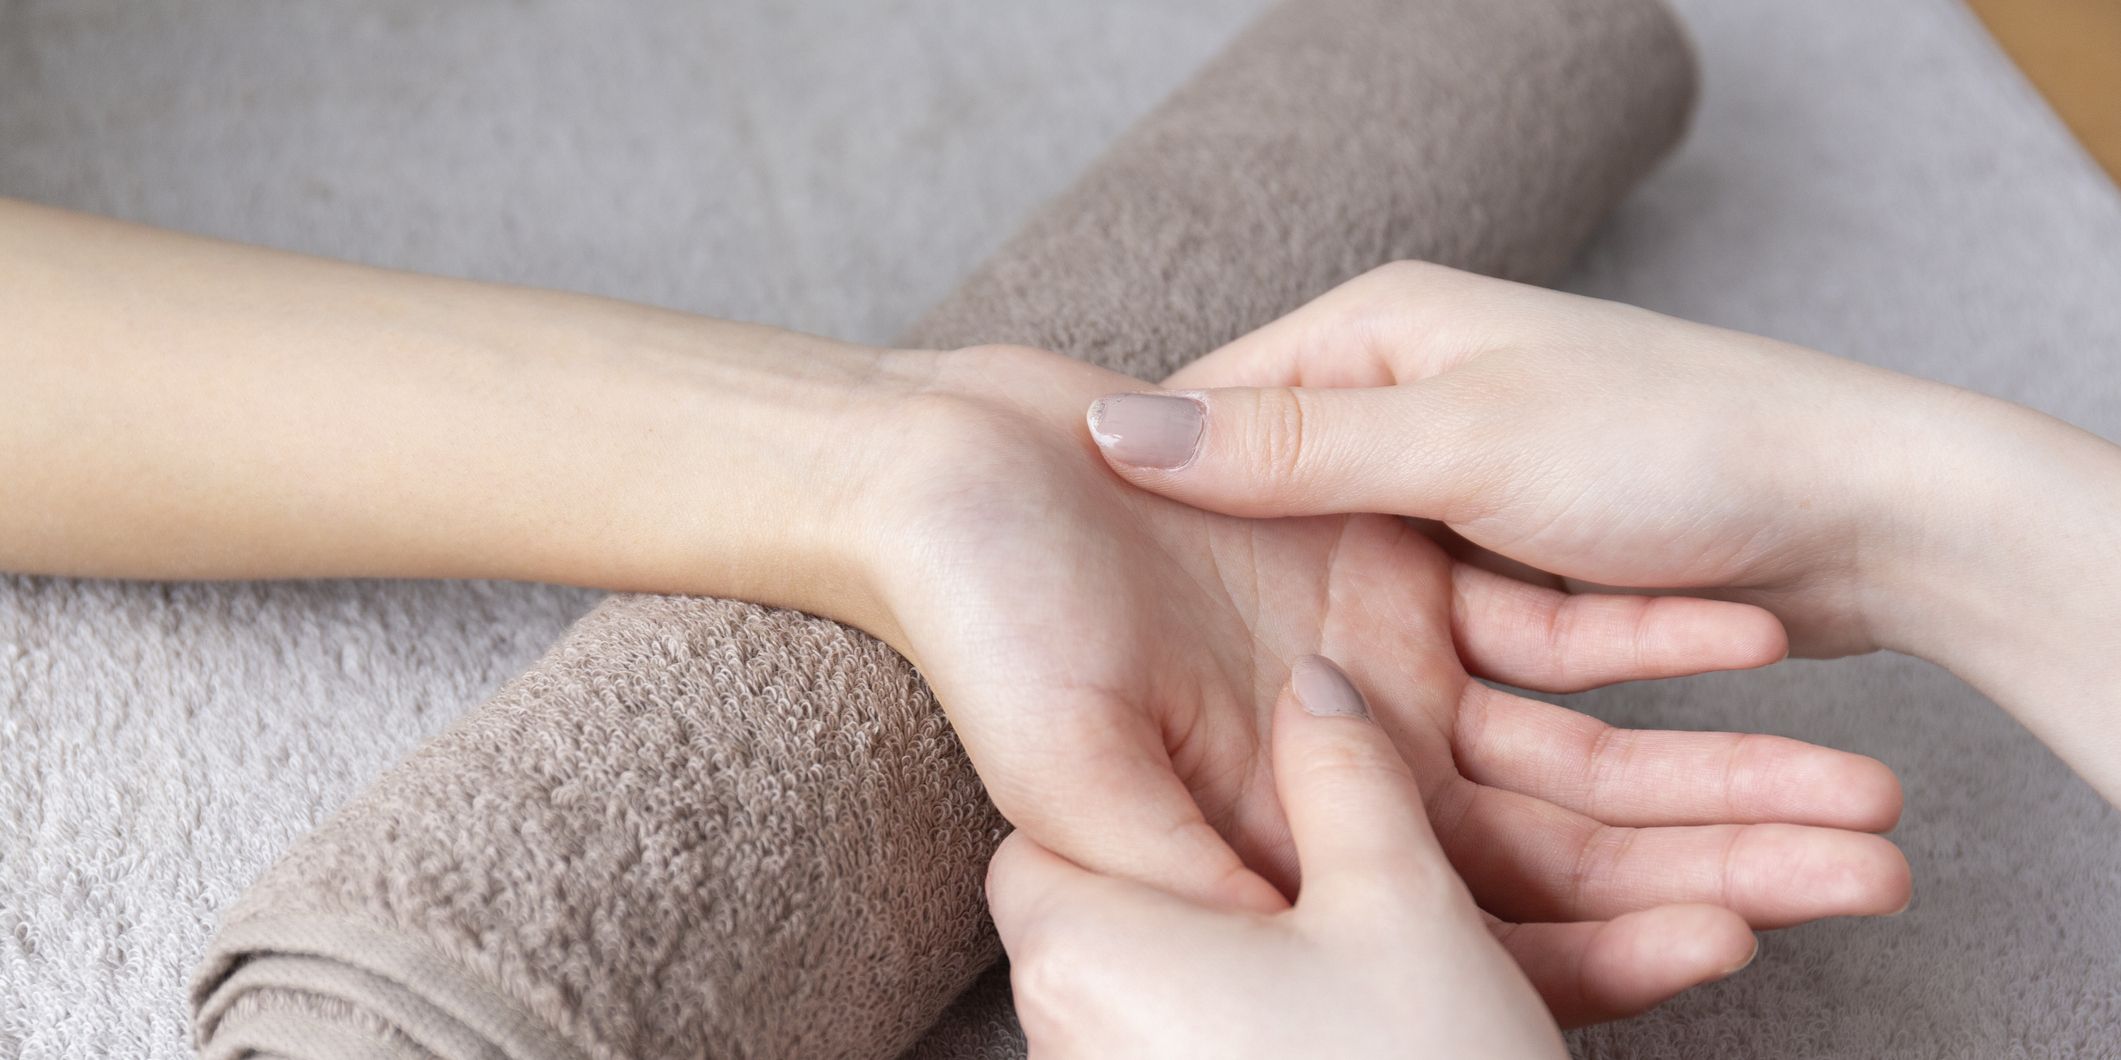 hand massage pressure points